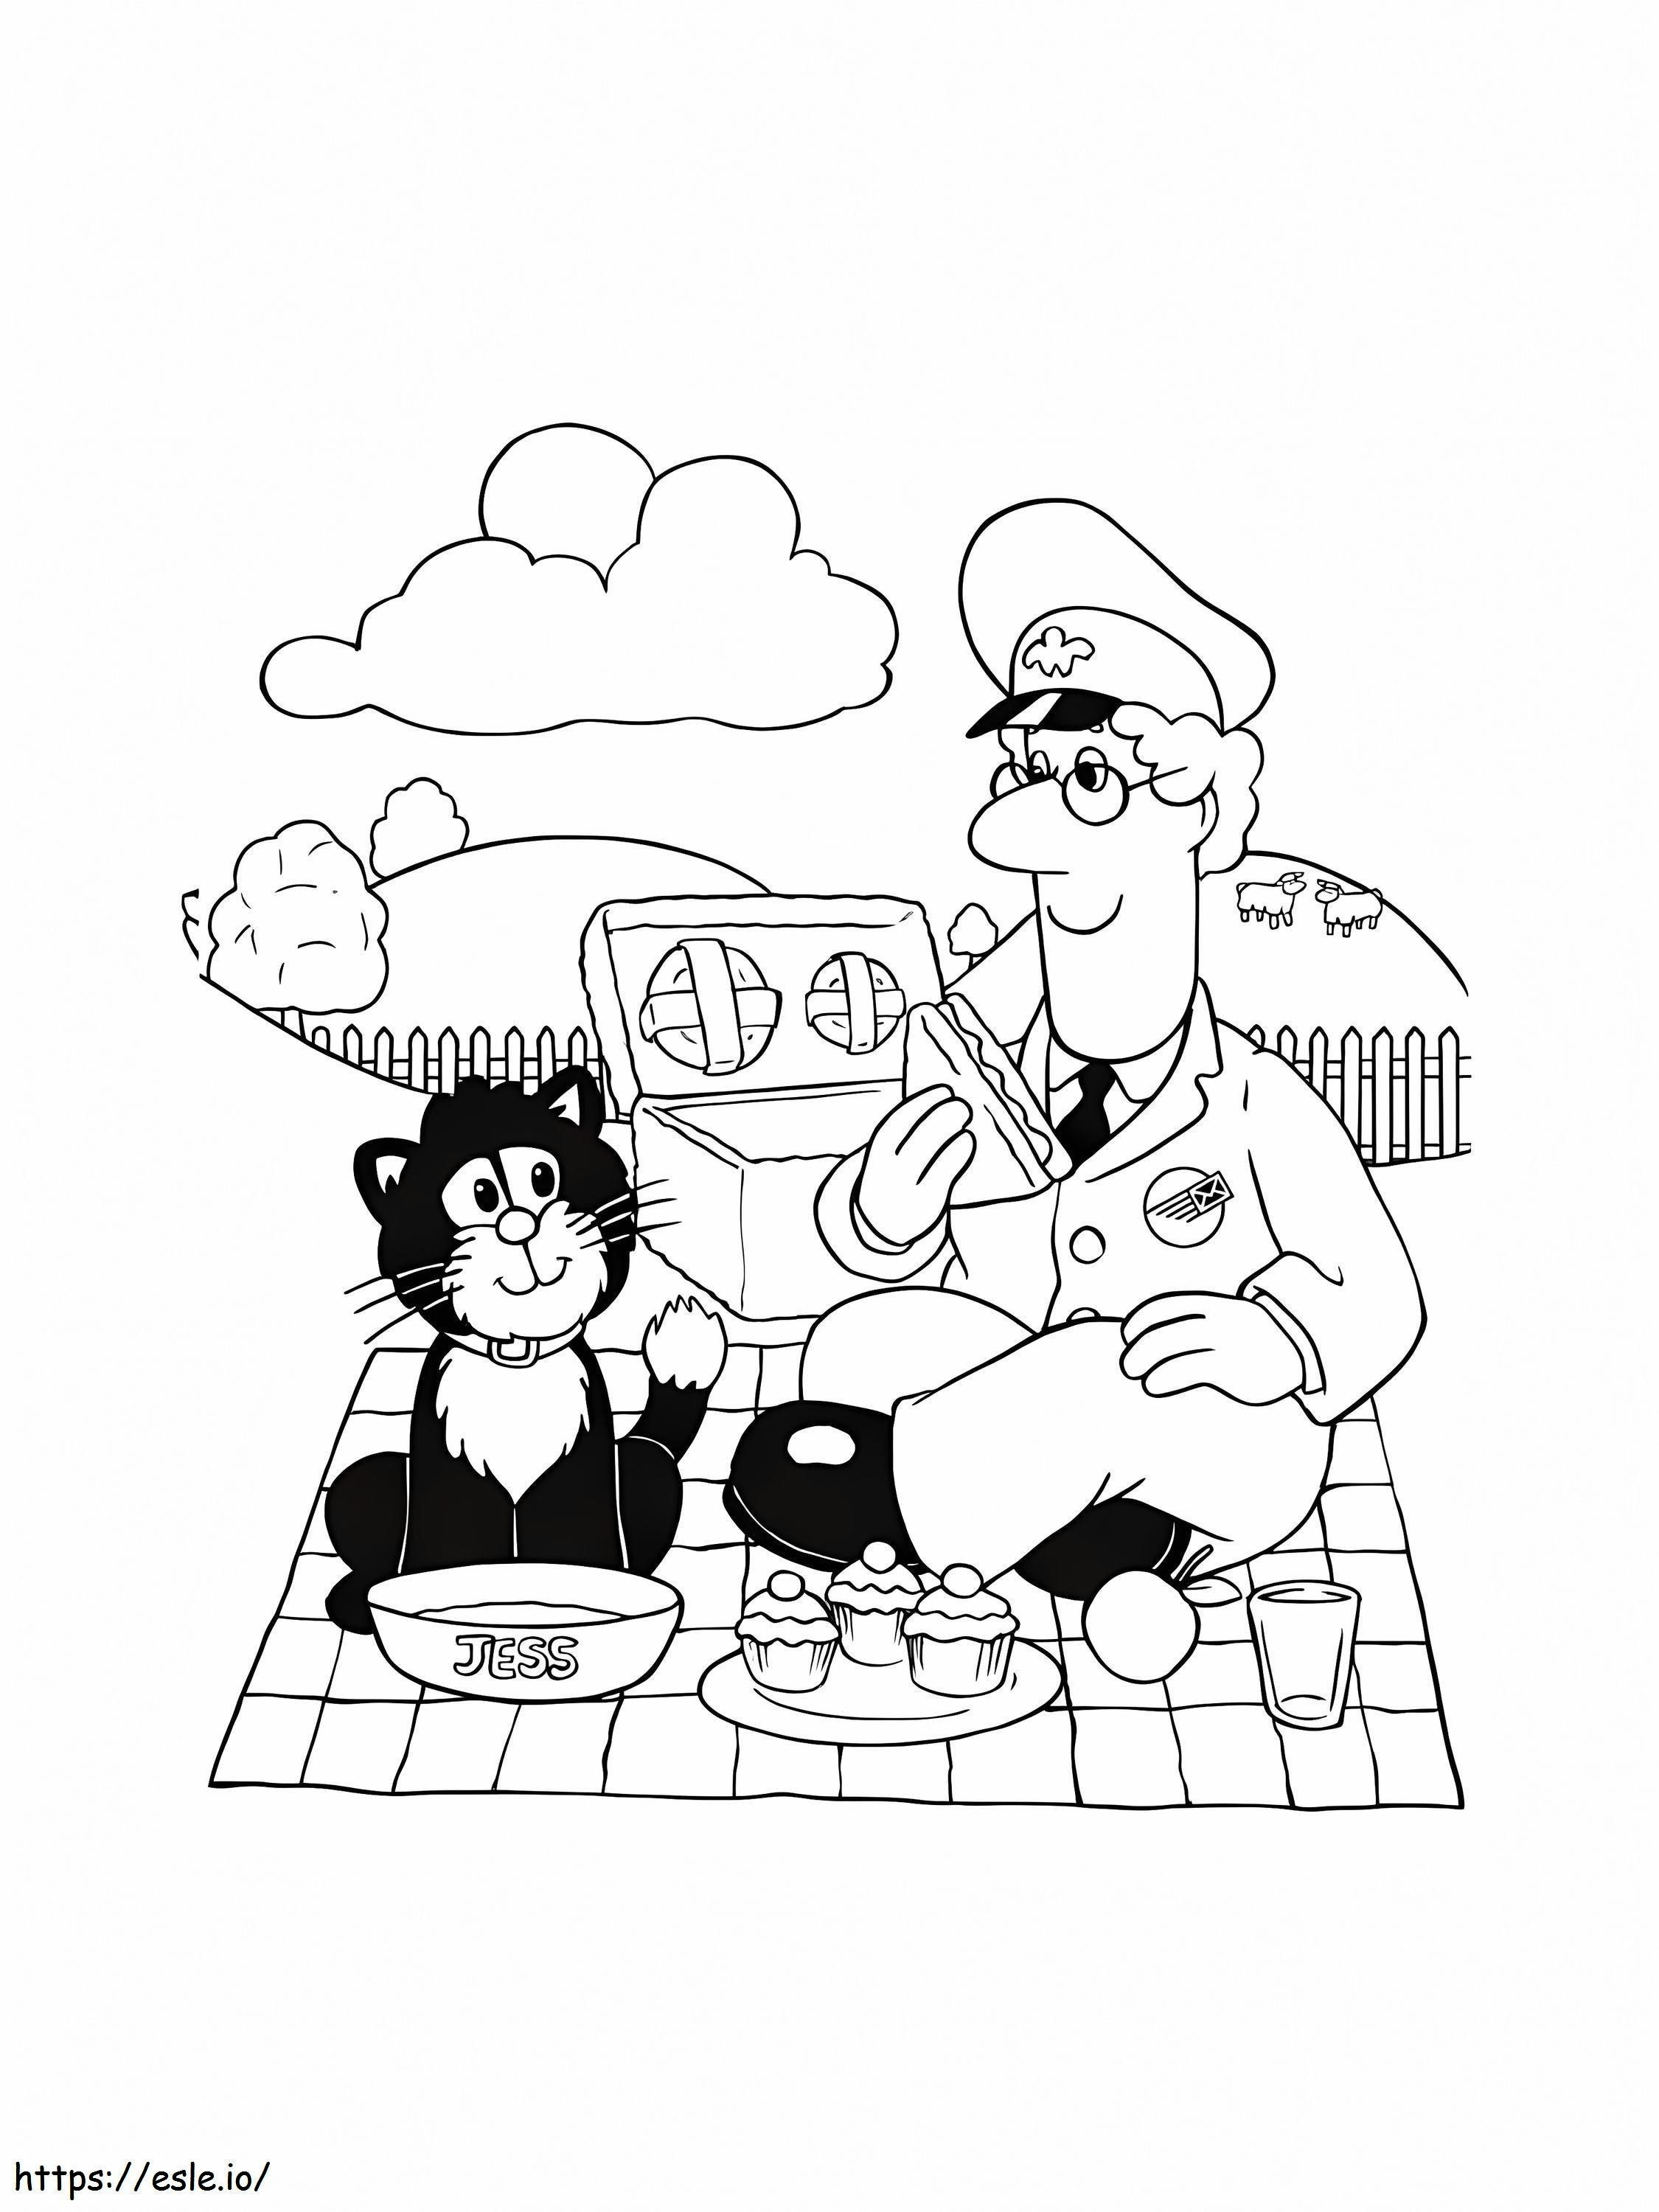 Postacı ve Oturan Kedi boyama